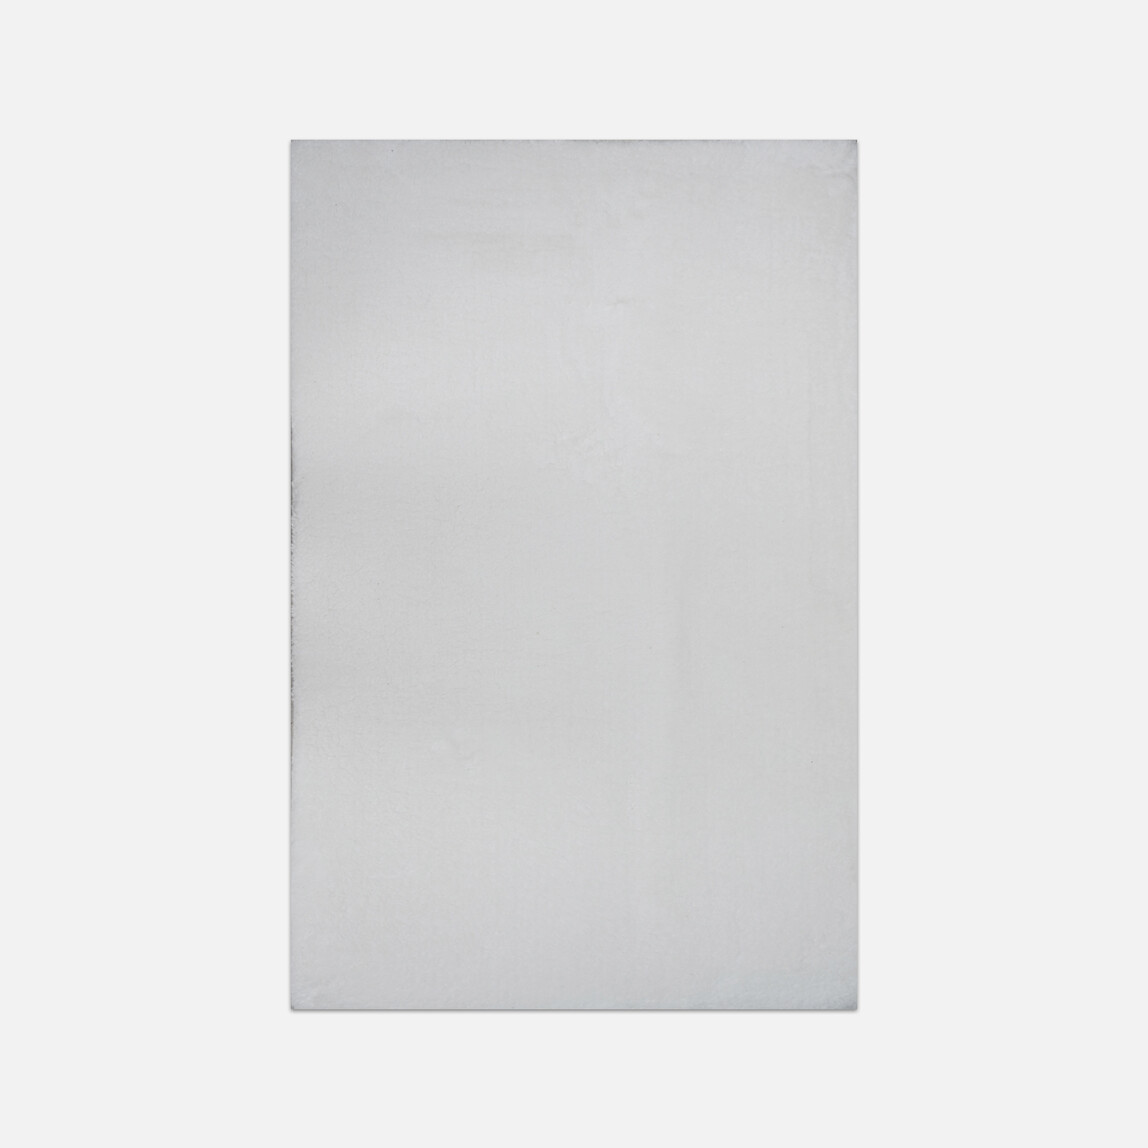    Concepta Touch T05 Beyaz Kilim 120x180 cm  